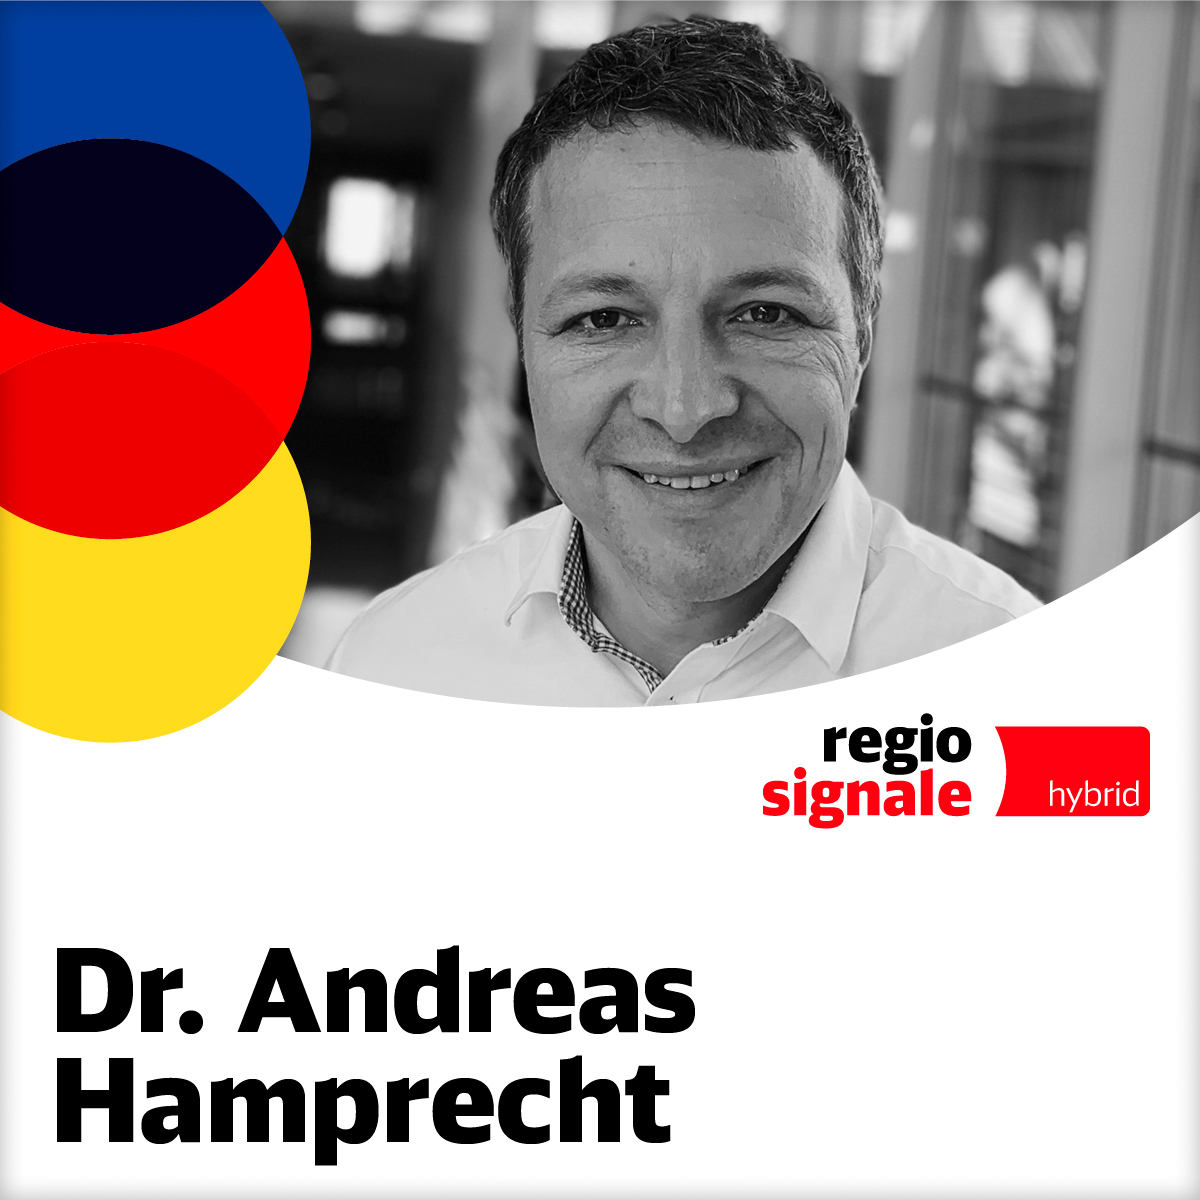 Dr. Andreas Hamprecht